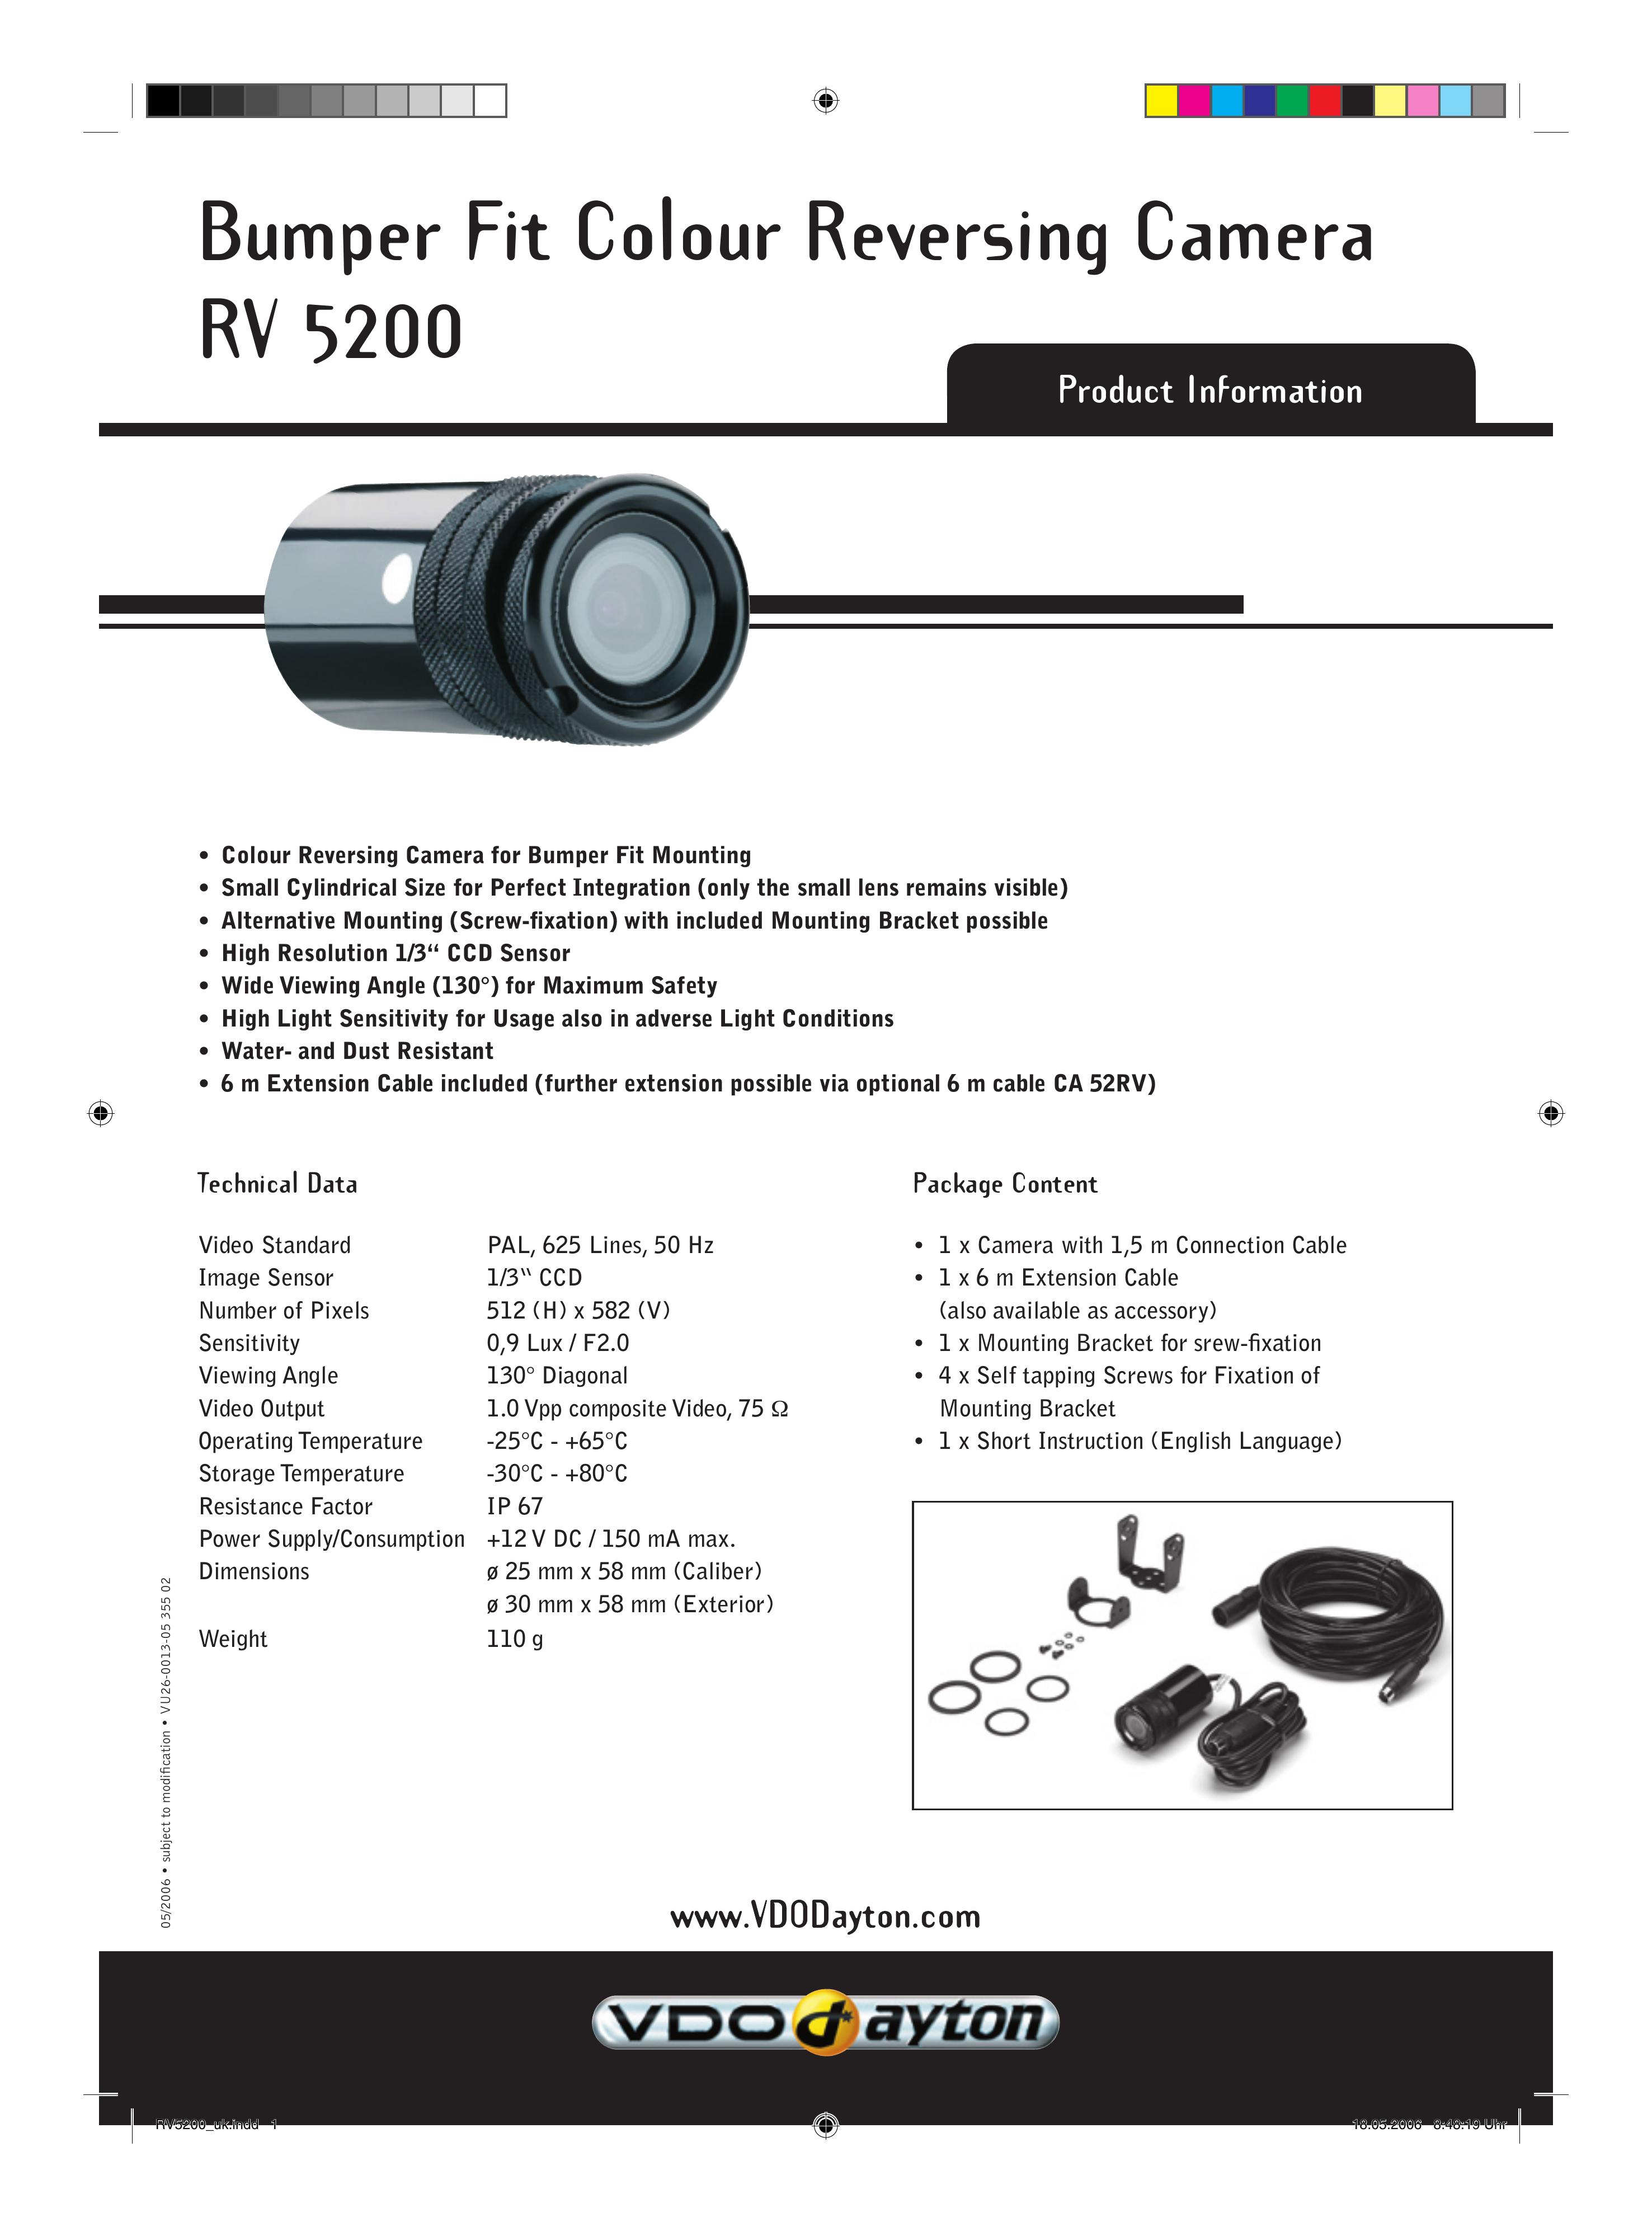 VDO Dayton RV 5200 Digital Camera User Manual